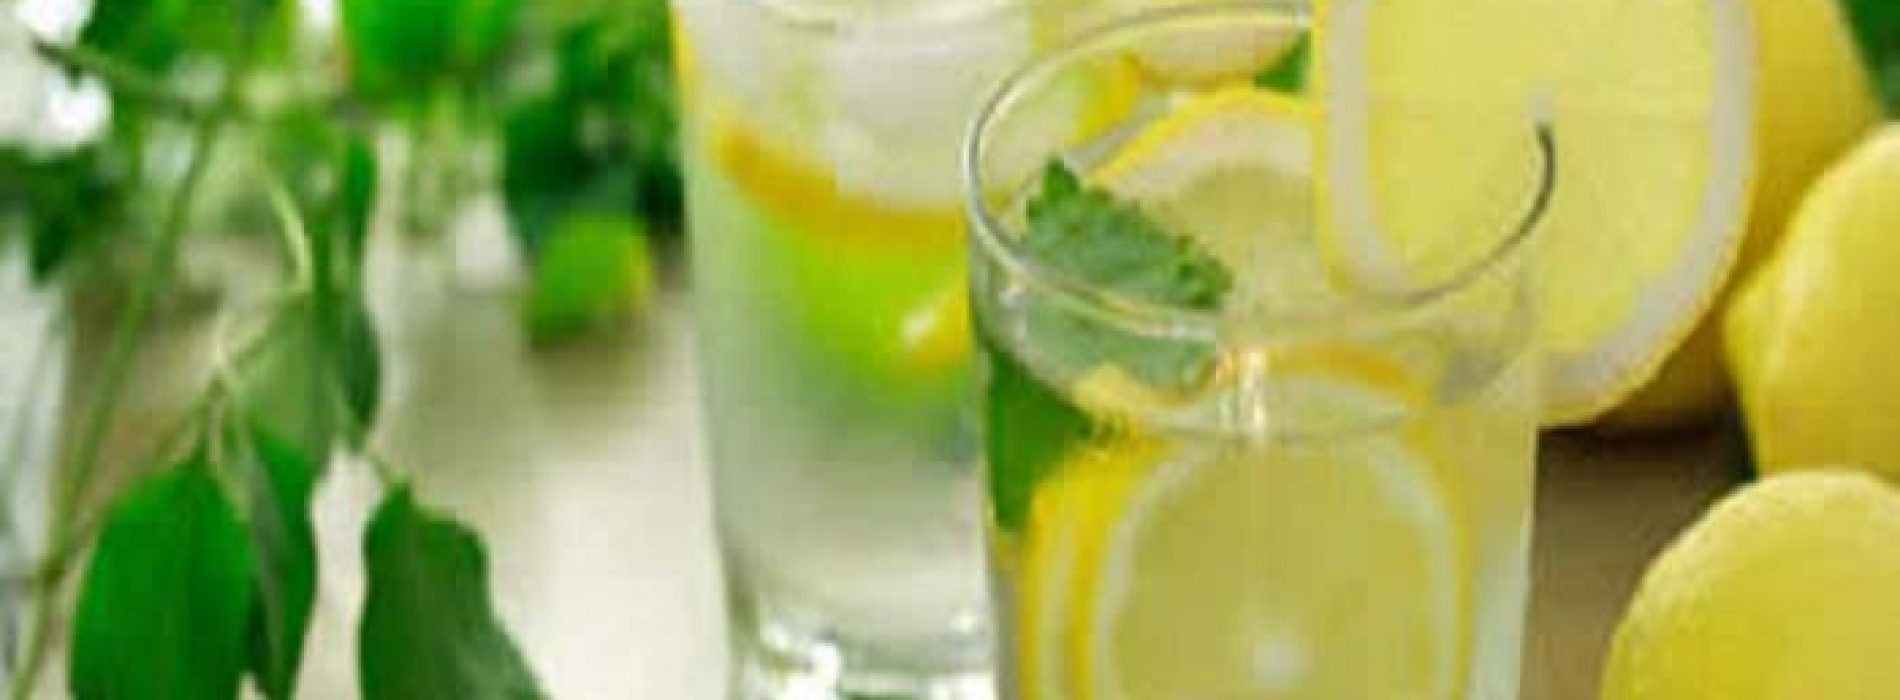 14 gezondheidsproblemen die verholpen worden door het drinken van citroen water.